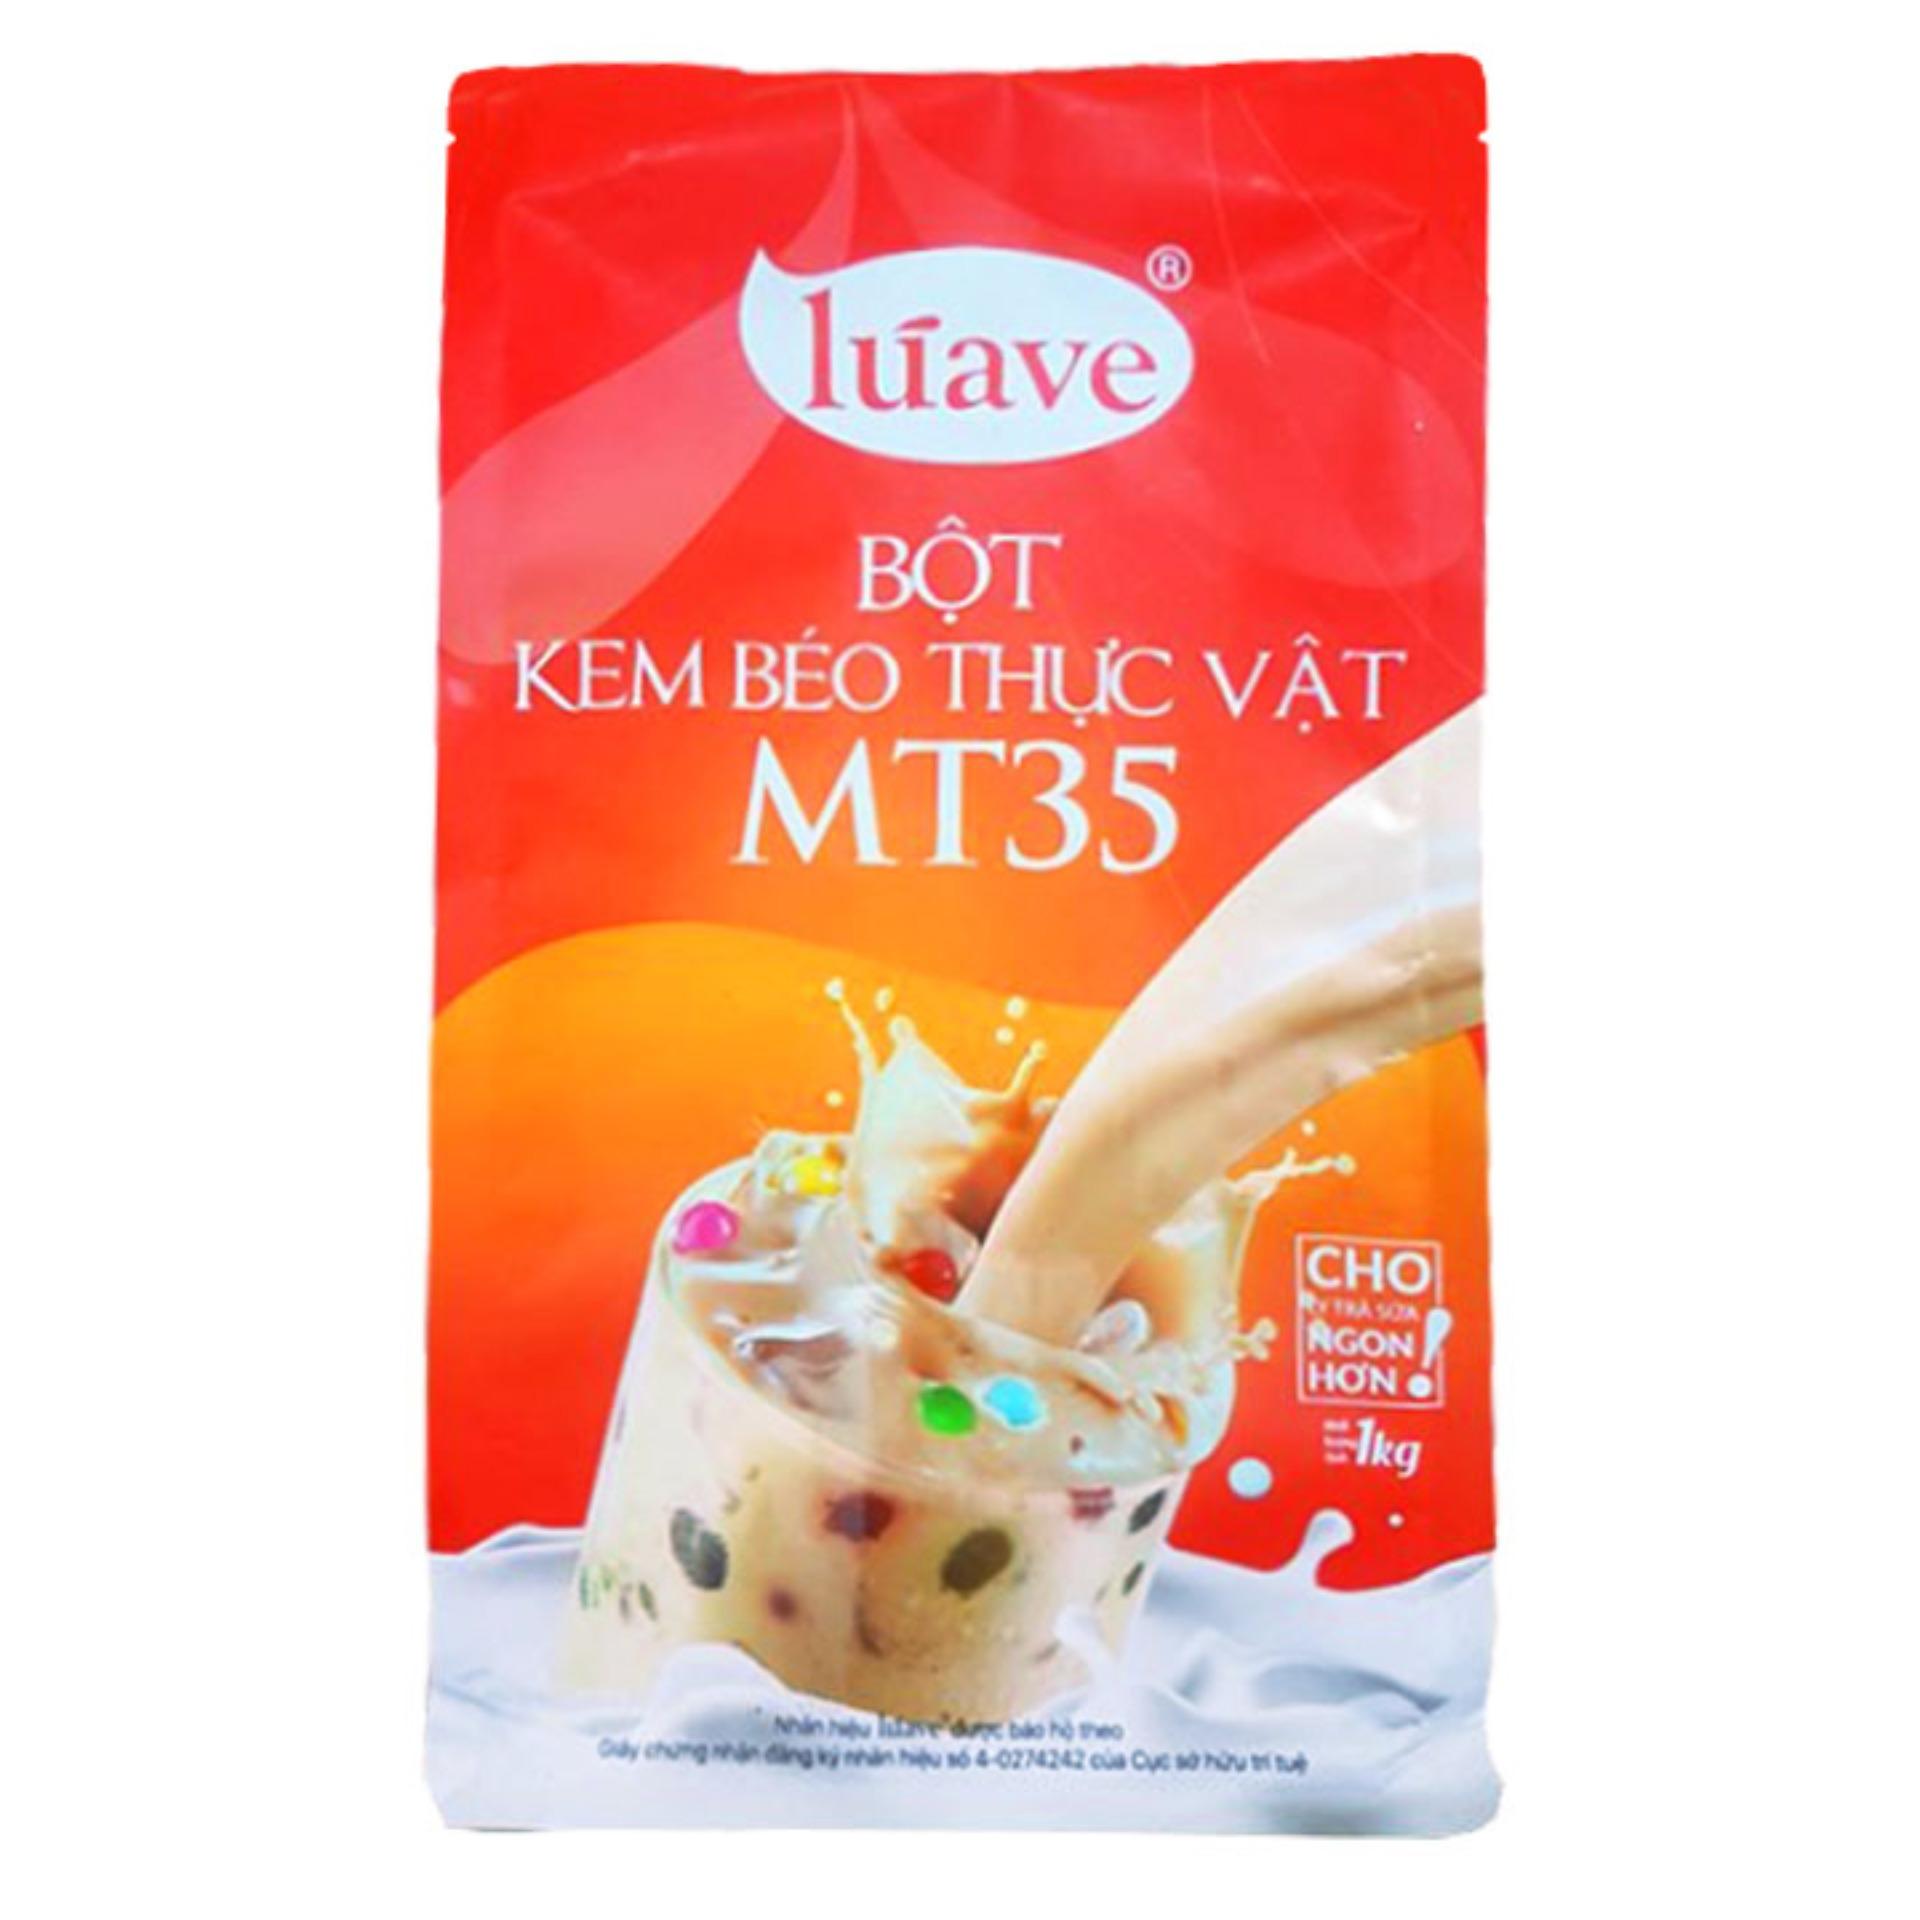 Bột kem béo MT35 Luave gói 1kg bột sữa, bột kem không sữa, bột béo